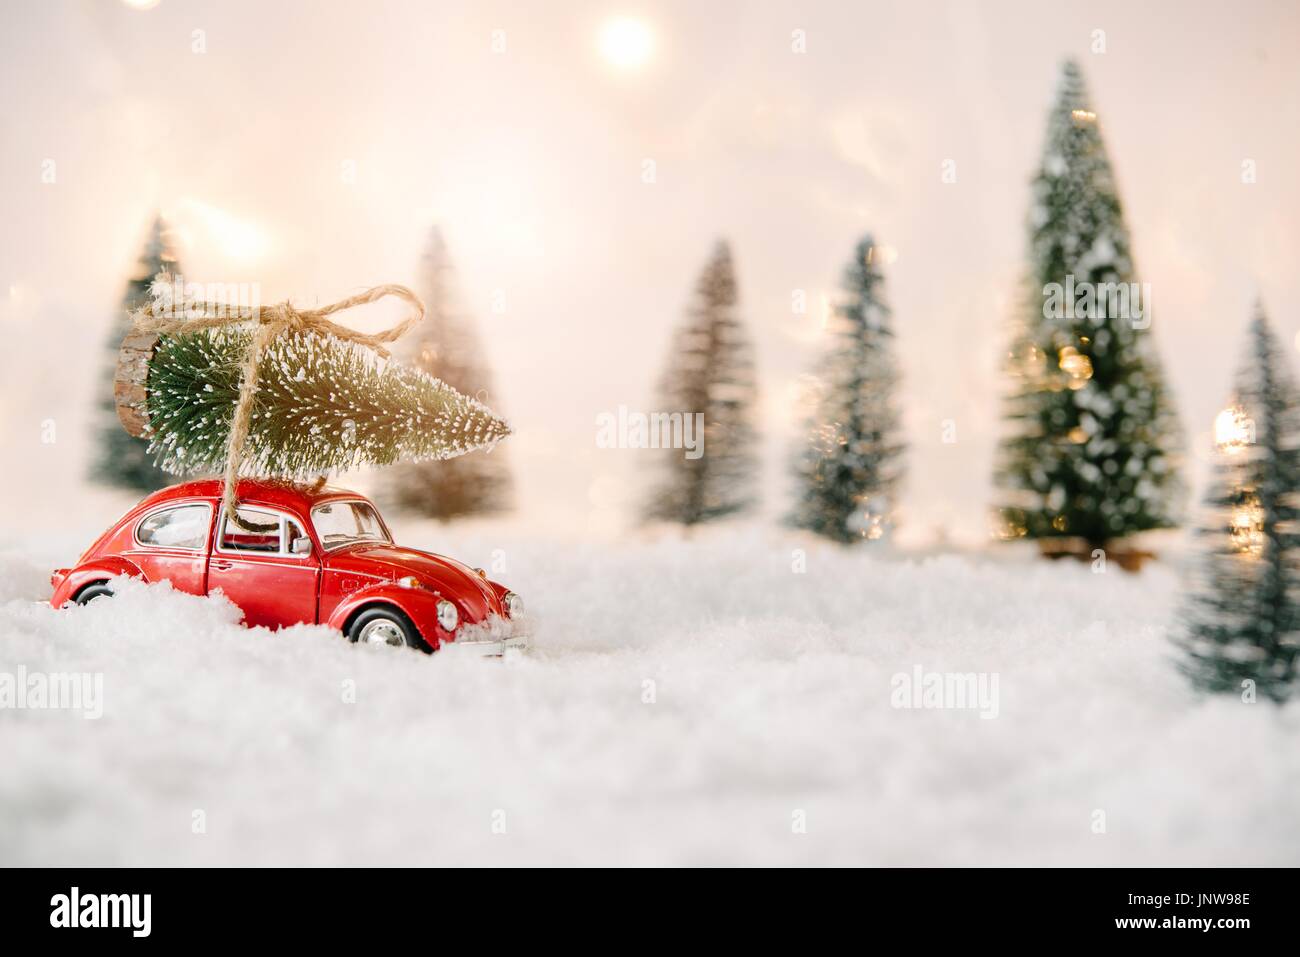 Kleines Rotes Auto Spielzeug Mit Weihnachtsbaum Im Schnee Bedeckt Miniatur Wald Stockfotografie Alamy